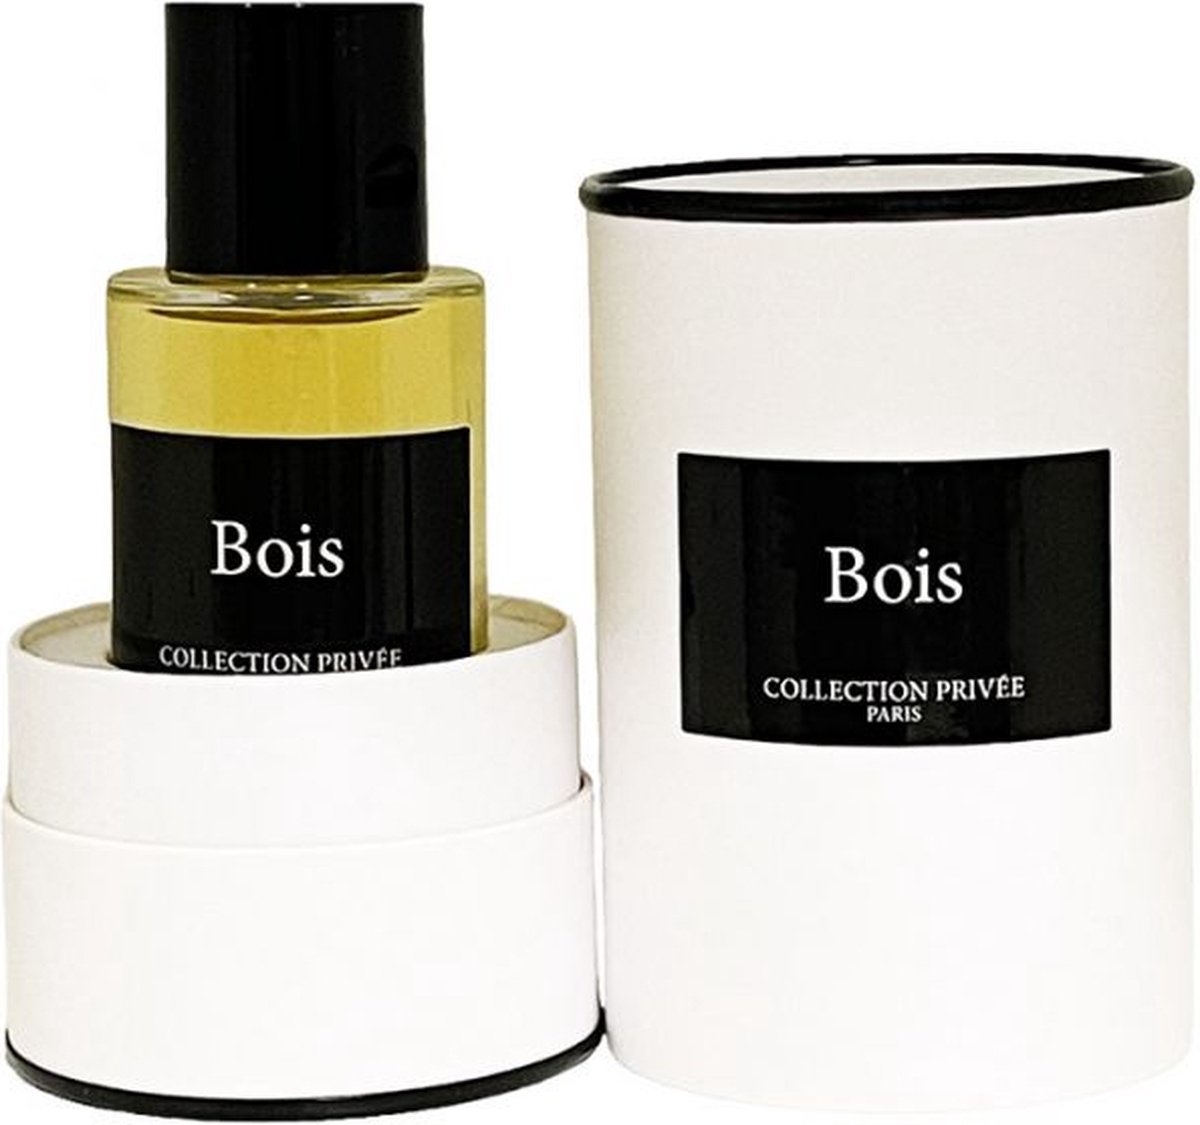 Collection Privee Paris Bois 50 ml Eau de Parfum - Unisex